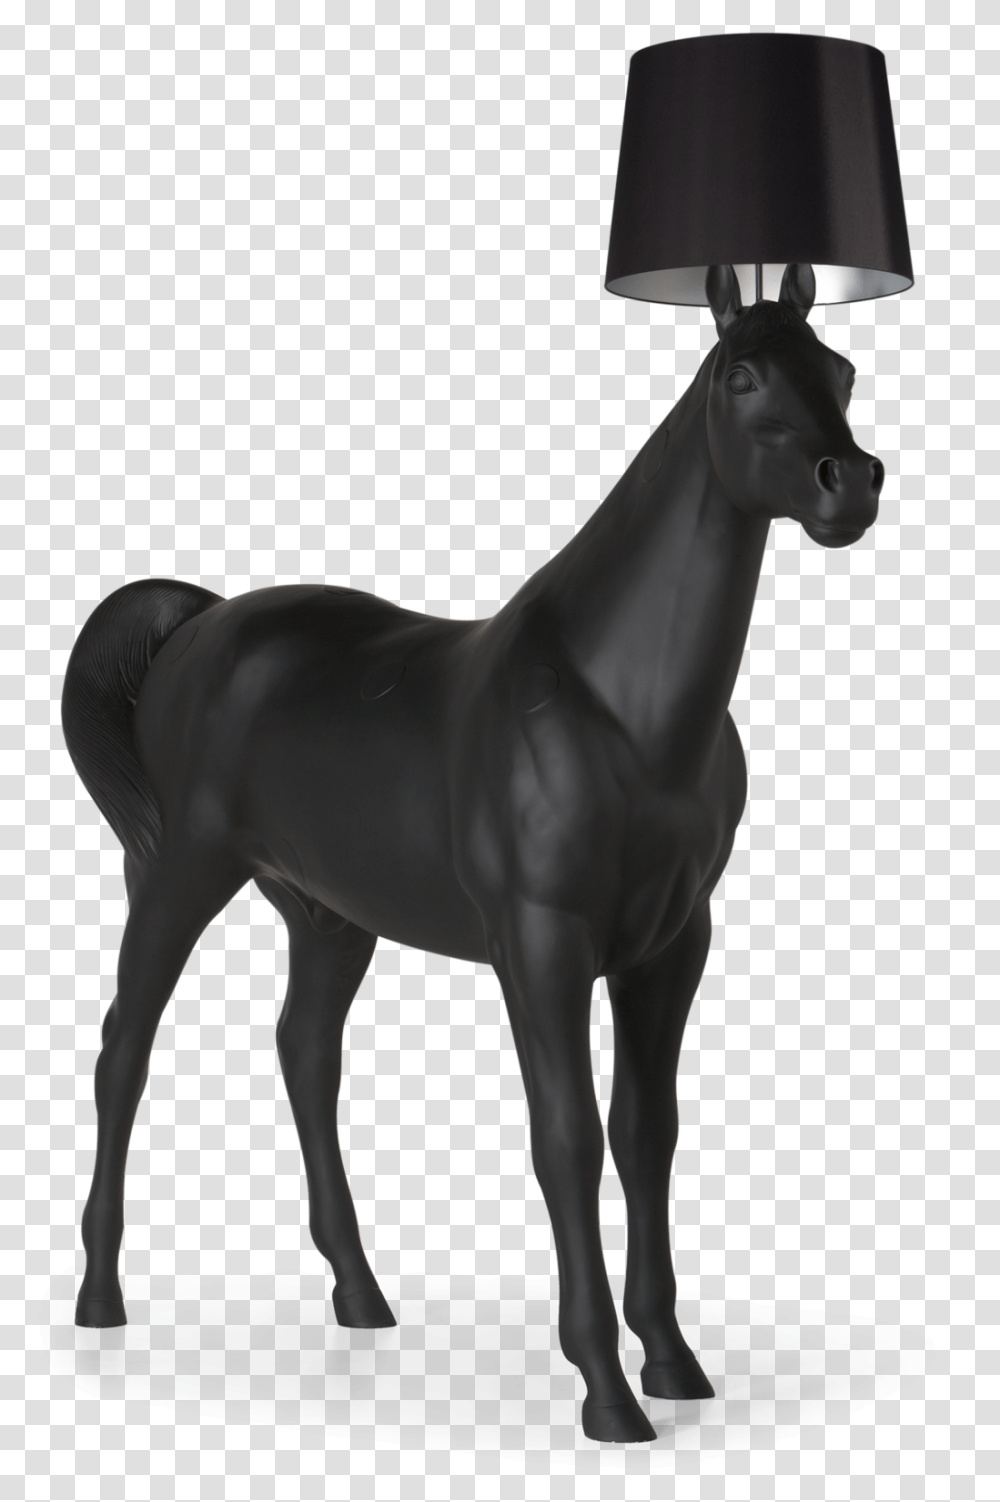 Giant Horse Lamp, Mammal, Animal, Antelope, Wildlife Transparent Png